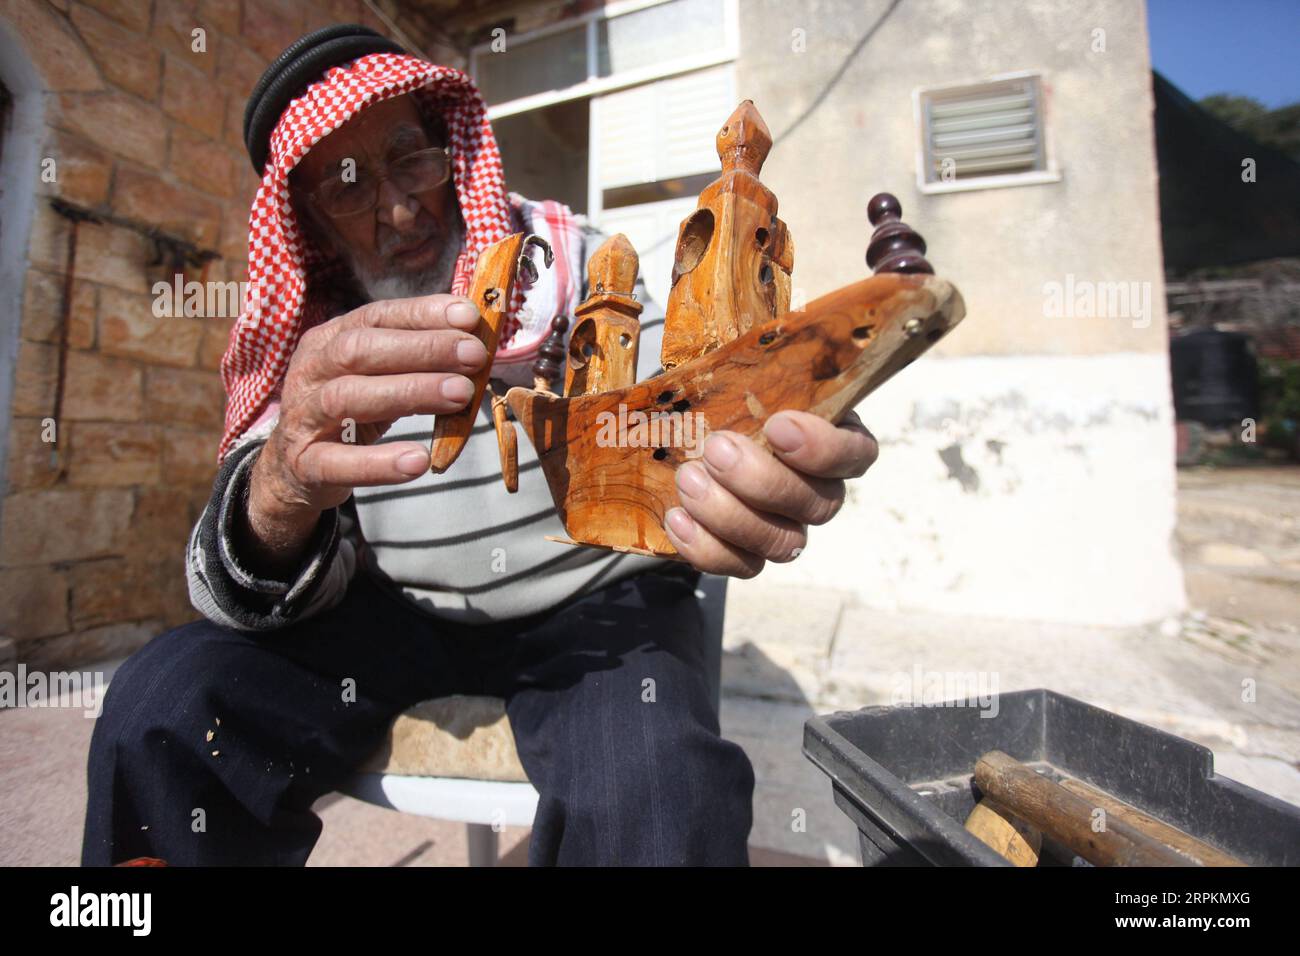 200114 -- JÉNINE, 14 janvier 2020 Xinhua -- le palestinien Mohammad Hussein expose une sculpture en bois qu'il a faite à son domicile dans le village d'A nin, près de la ville de Jénine, au nord de la Cisjordanie, le 14 janvier 2020. Le travail principal de Mohammad Hussein, un vieil homme palestinien de Cisjordanie, est de sculpter du bois en outils agricoles simples et autres œuvres d’art en bois pour protéger l’ancien patrimoine palestinien de la disparition. POUR ALLER AVEC la caractéristique : un aîné palestinien sculpte le bois en chefs-d'œuvre comme moyen de sauver le patrimoine antique photo de Nidal Eshtayeh/Xinhua MIDEAST-JENIN-PALESTINIEN ELDER-HERITAGE PUBLICAT Banque D'Images